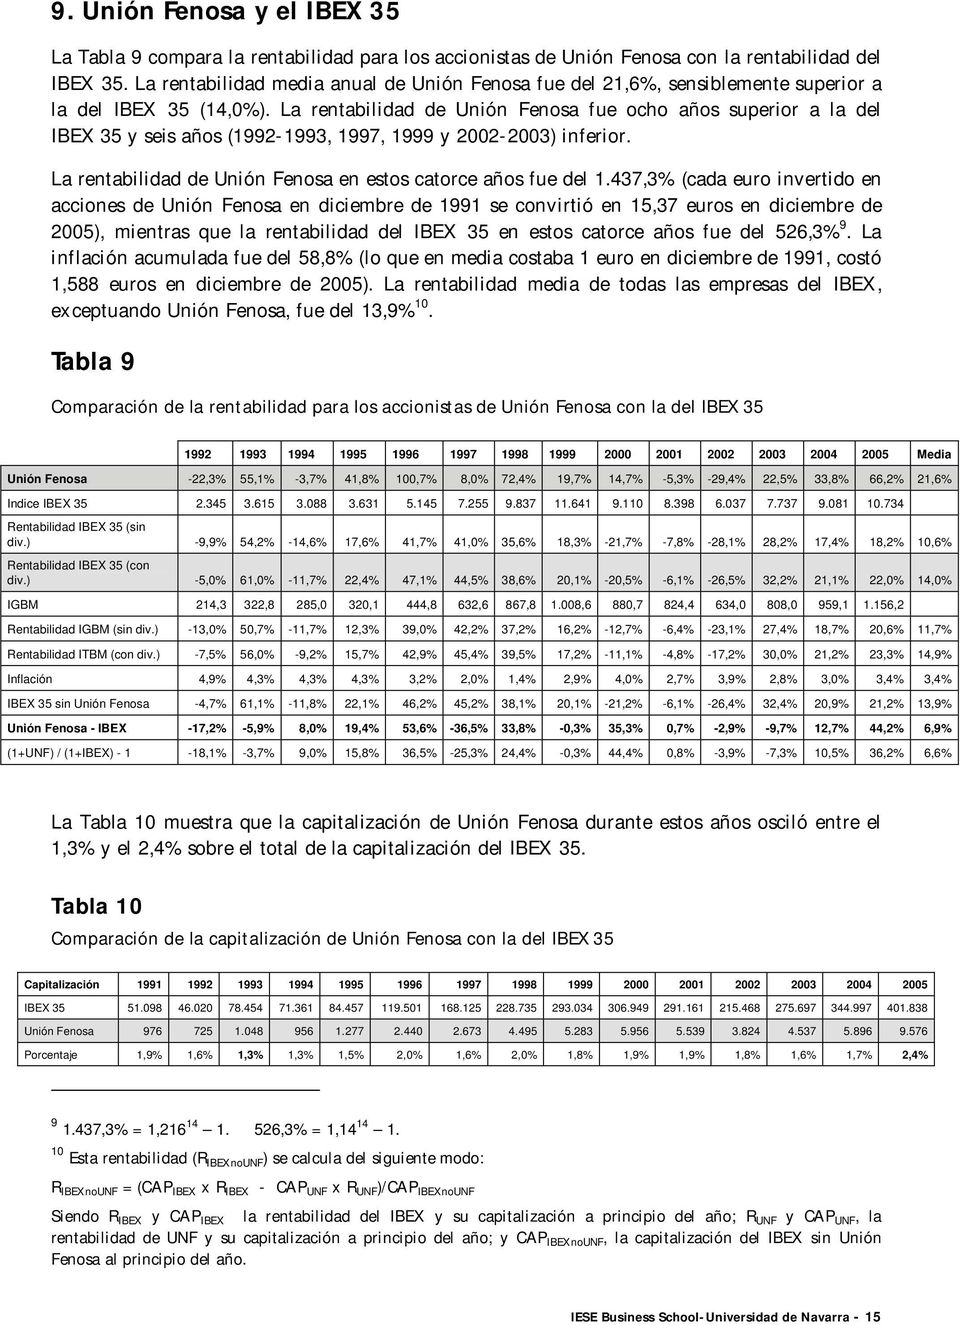 La rentabilidad de Unión Fenosa fue ocho años superior a la del IBEX 35 y seis años (1992-1993, 1997, 1999 y 2002-2003) inferior. La rentabilidad de Unión Fenosa en estos catorce años fue del 1.